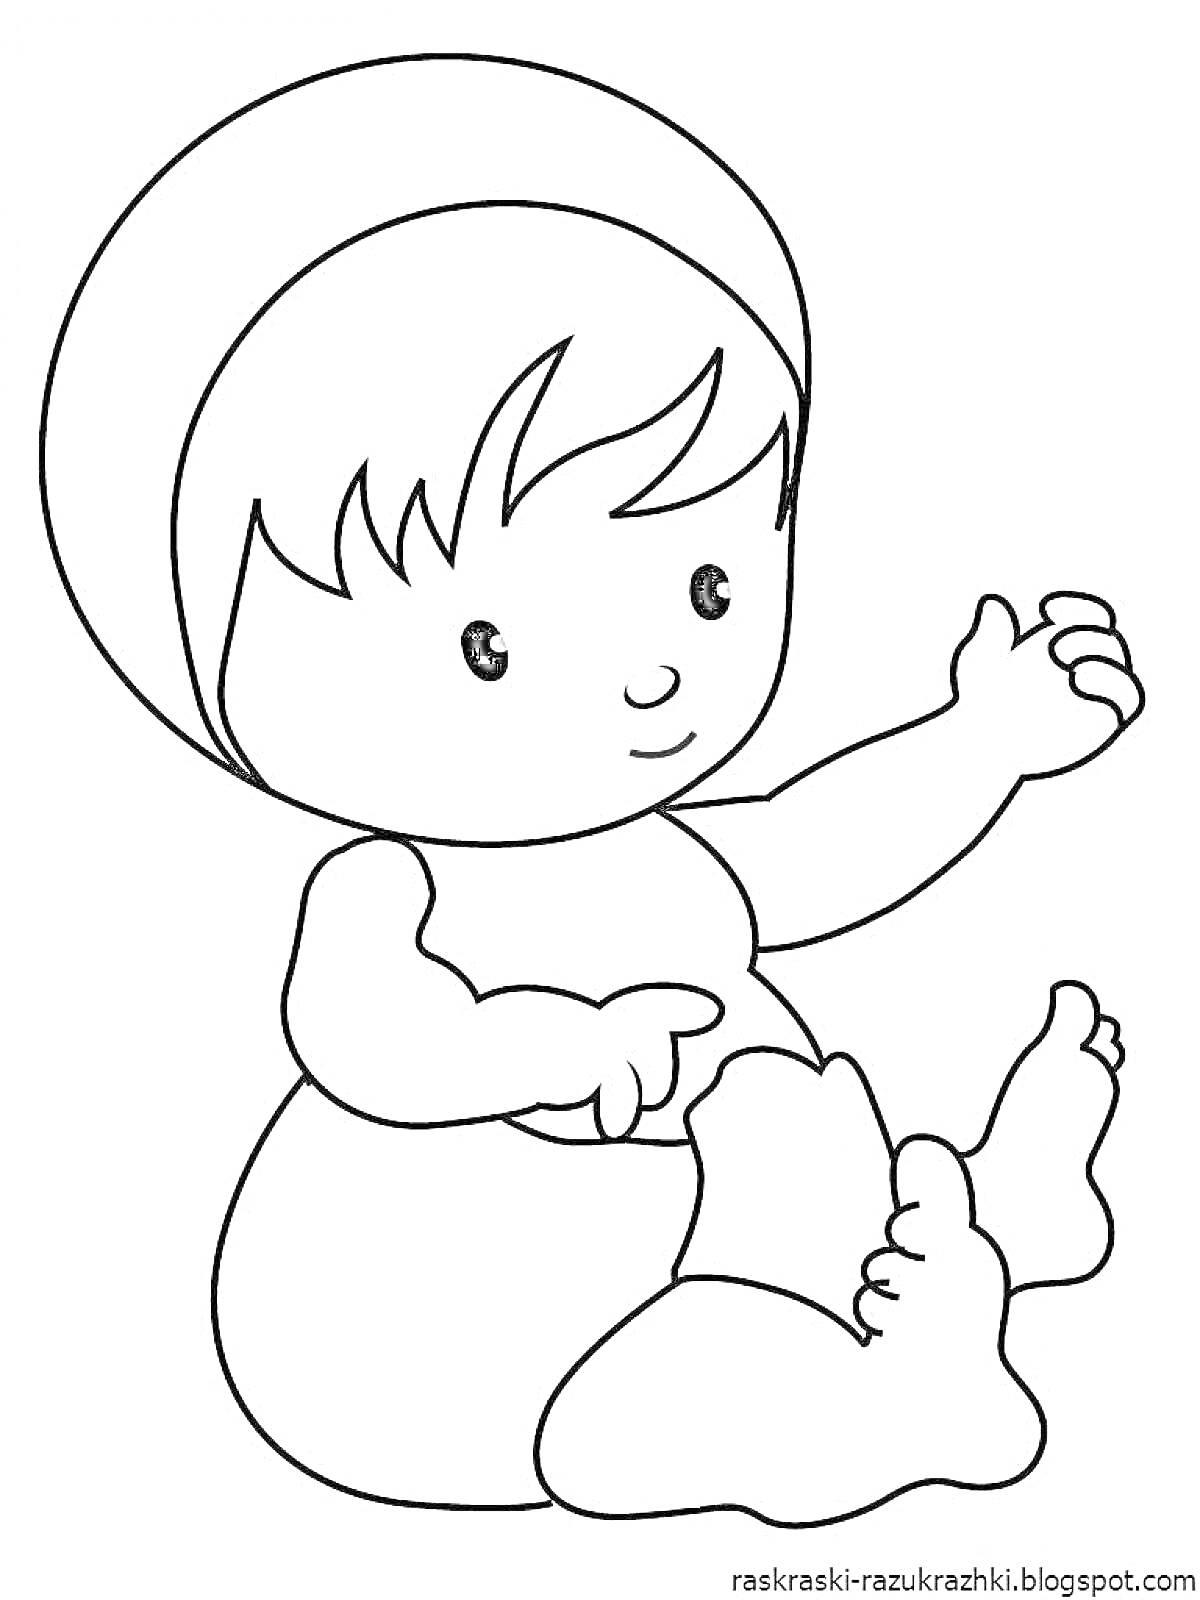 Раскраска ребенок в шапочке, сидящий на полу, держит одну руку вверх